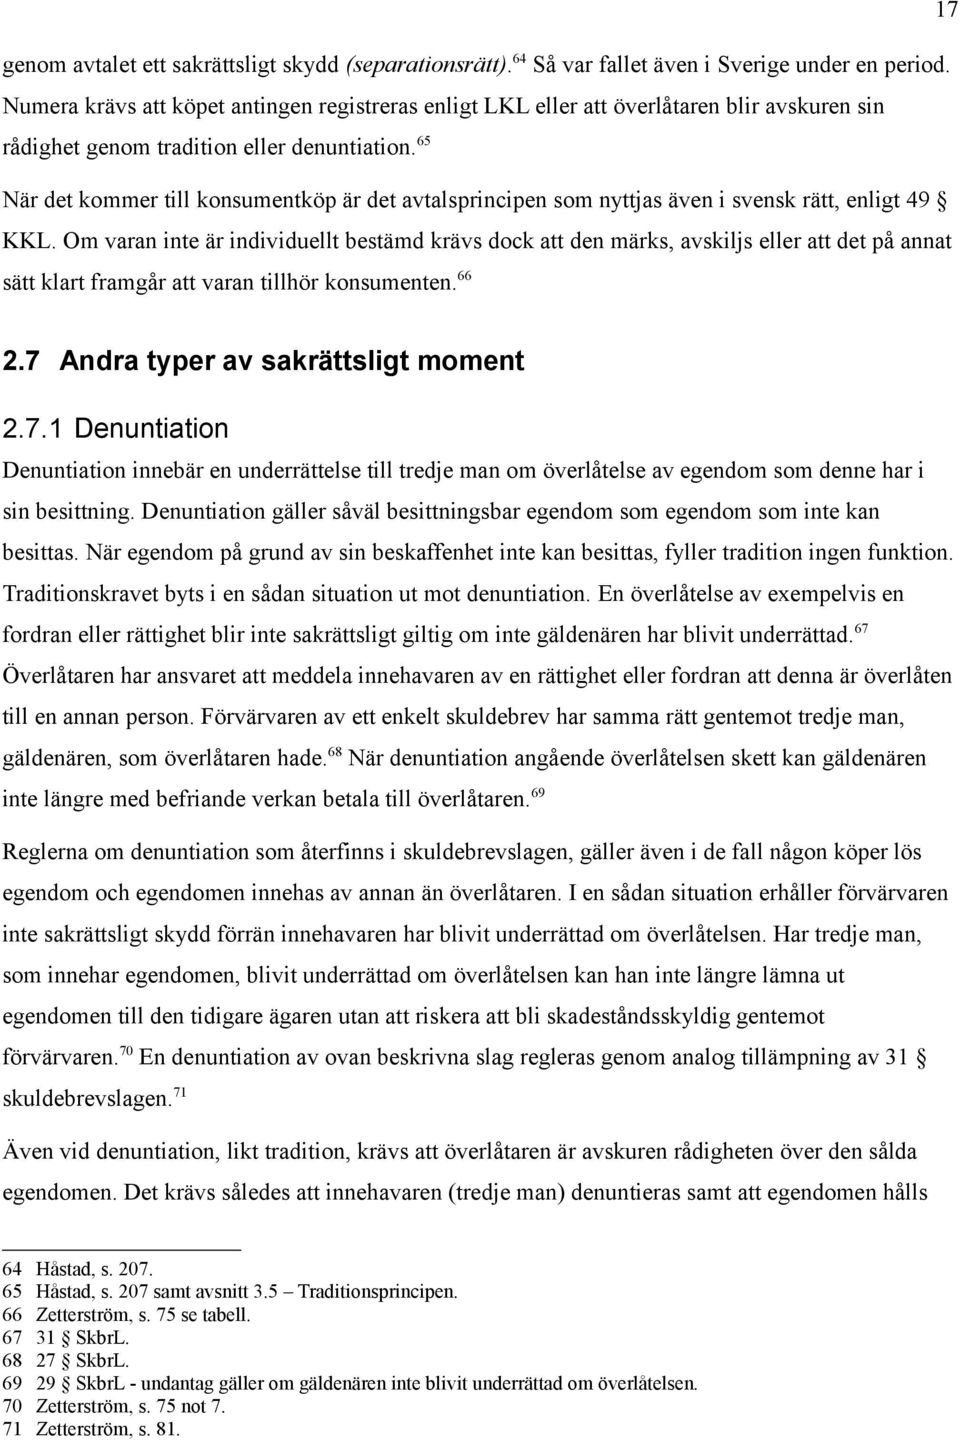 65 När det kommer till konsumentköp är det avtalsprincipen som nyttjas även i svensk rätt, enligt 49 KKL.